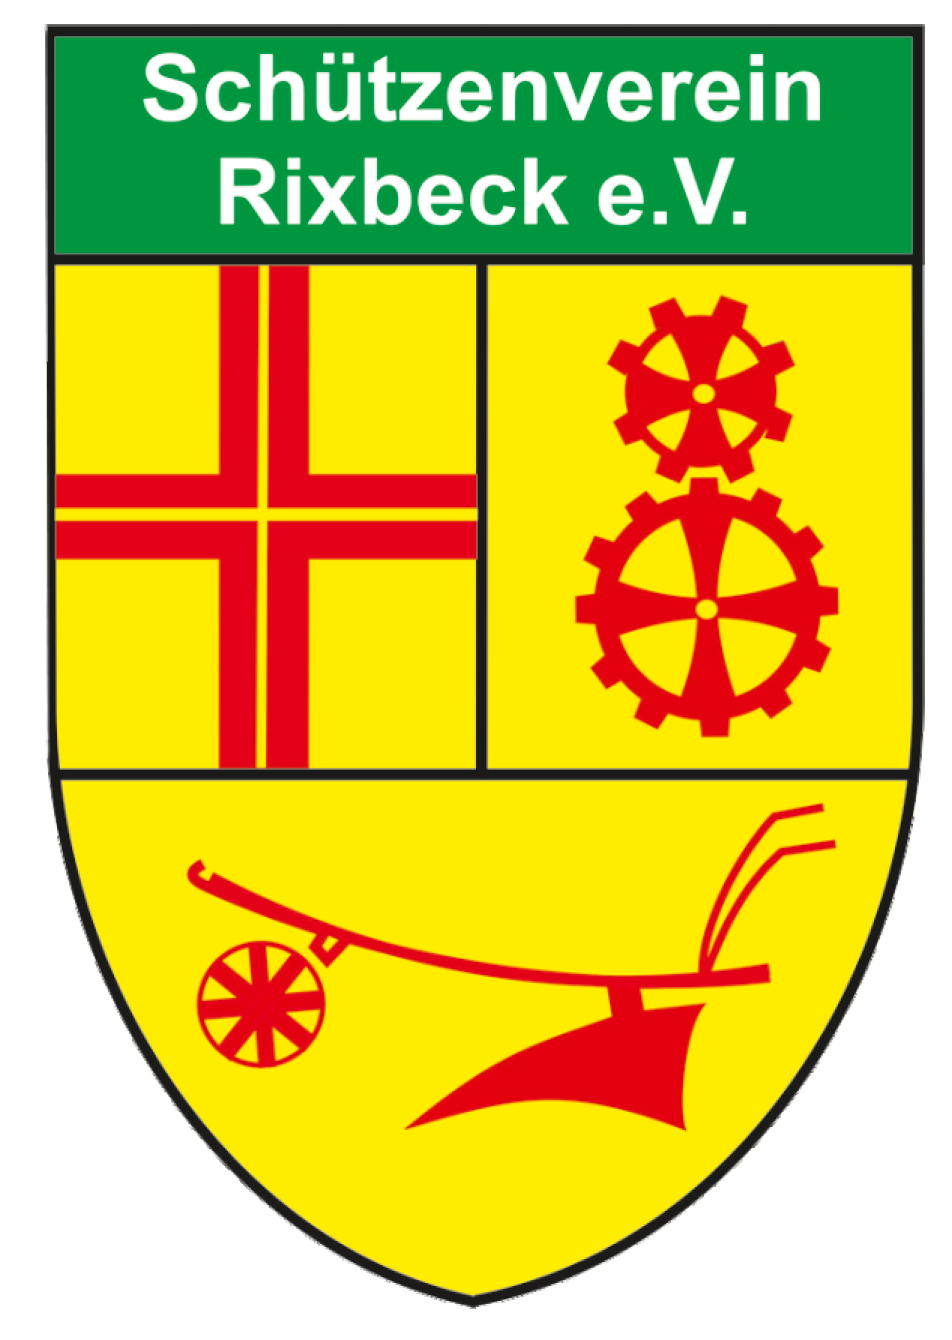 Schützenverein Rixbeck e.V.